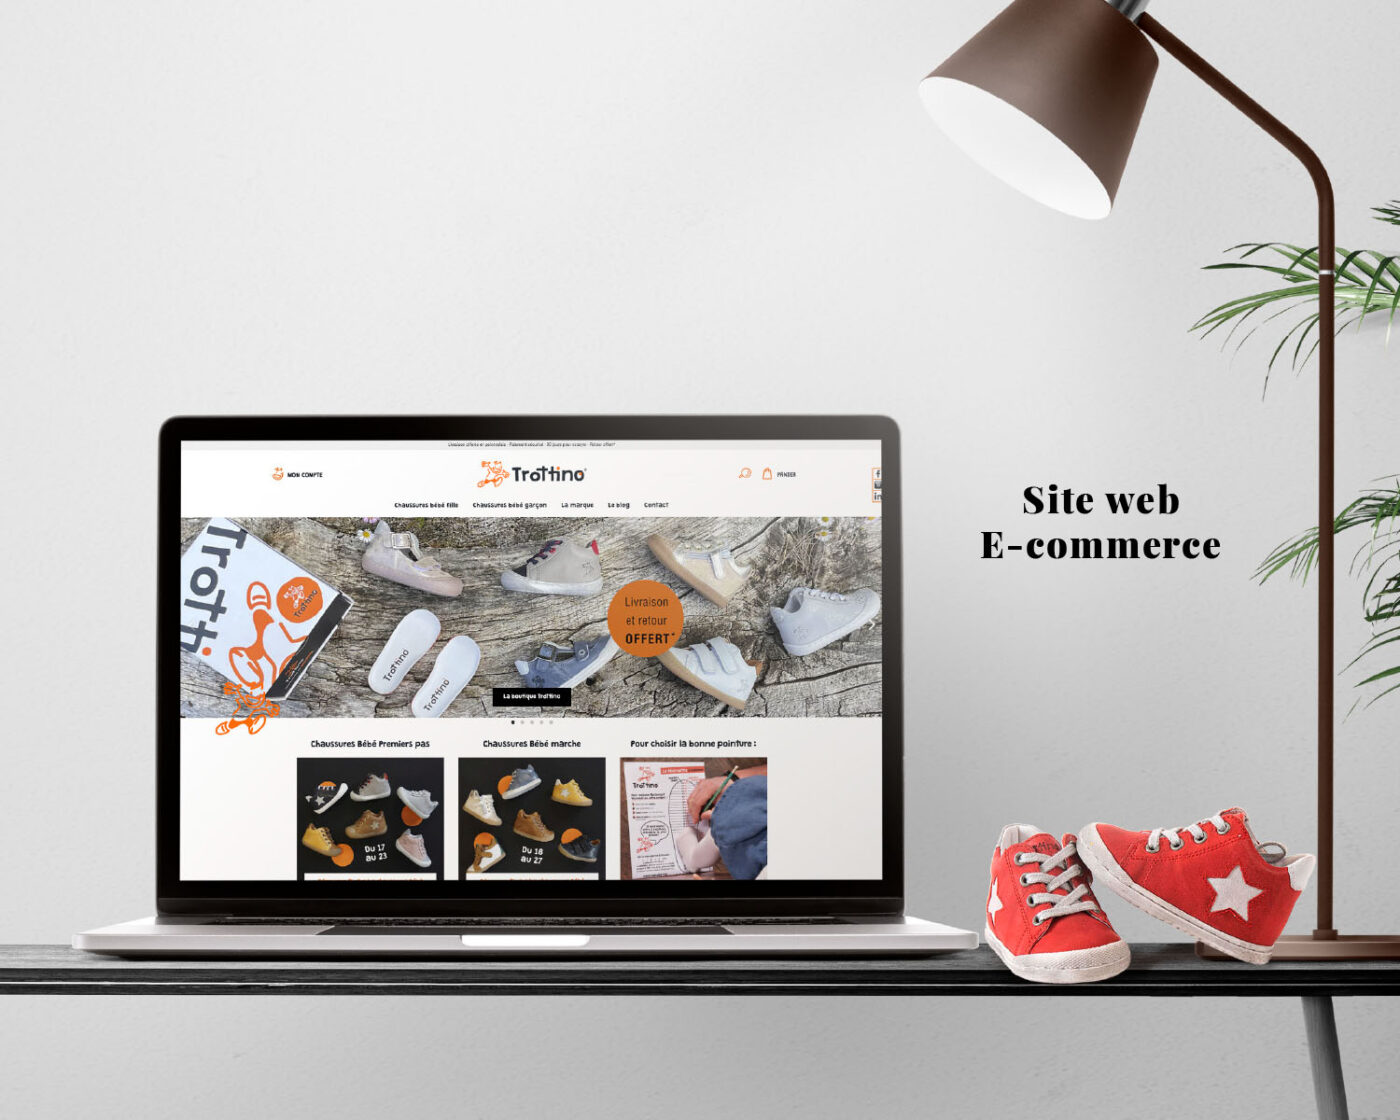 Webdesign et développement du site e-commerce www.trottino.fr sur le CMS WordPress